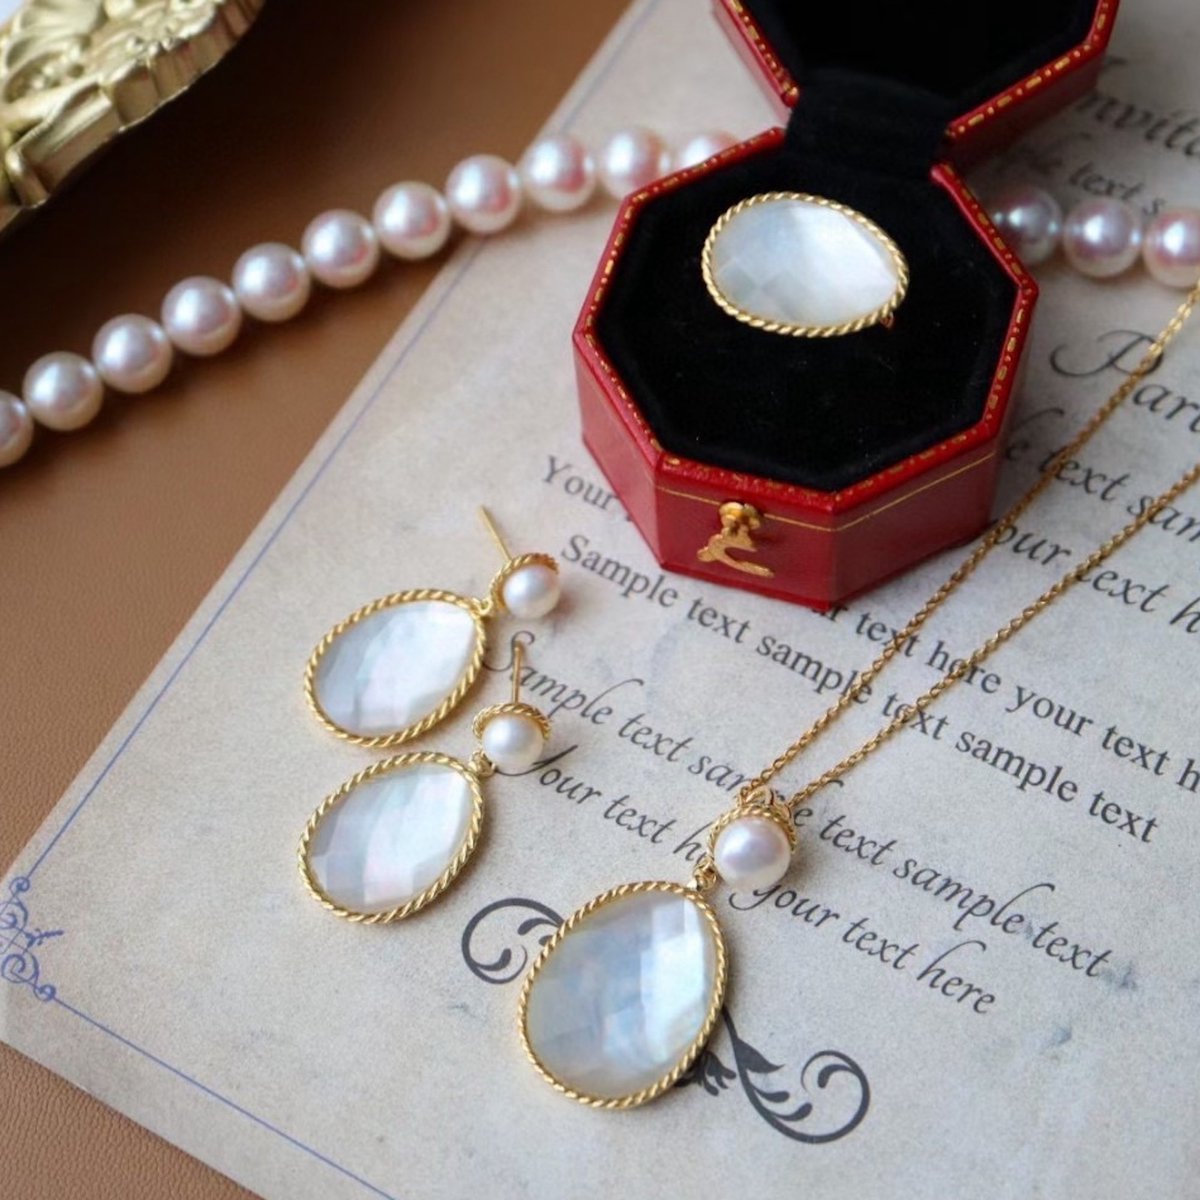 Parelmoer waterdruppel sieraden set - goud vermeil - oorbellen, ketting, verstelbare ring